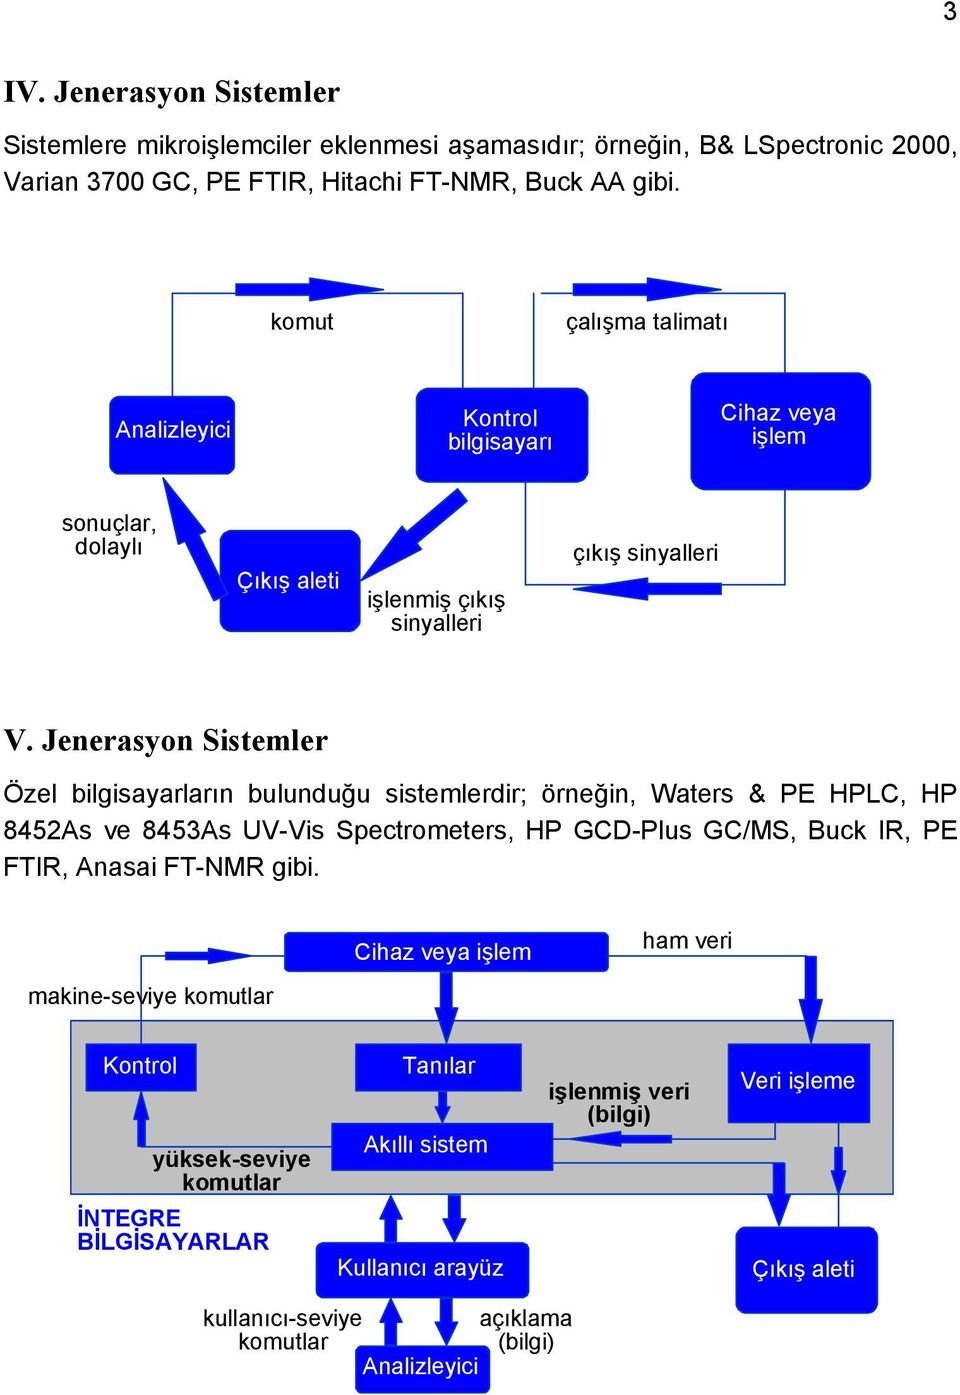 Jenerasyon Sistemler Özel bilgisayarların bulunduğu sistemlerdir; örneğin, Waters & PE HPLC, HP 8452As ve 8453As UV-Vis Spectrometers, HP GCD-Plus GC/MS, Buck IR, PE FTIR, Anasai FT-NMR